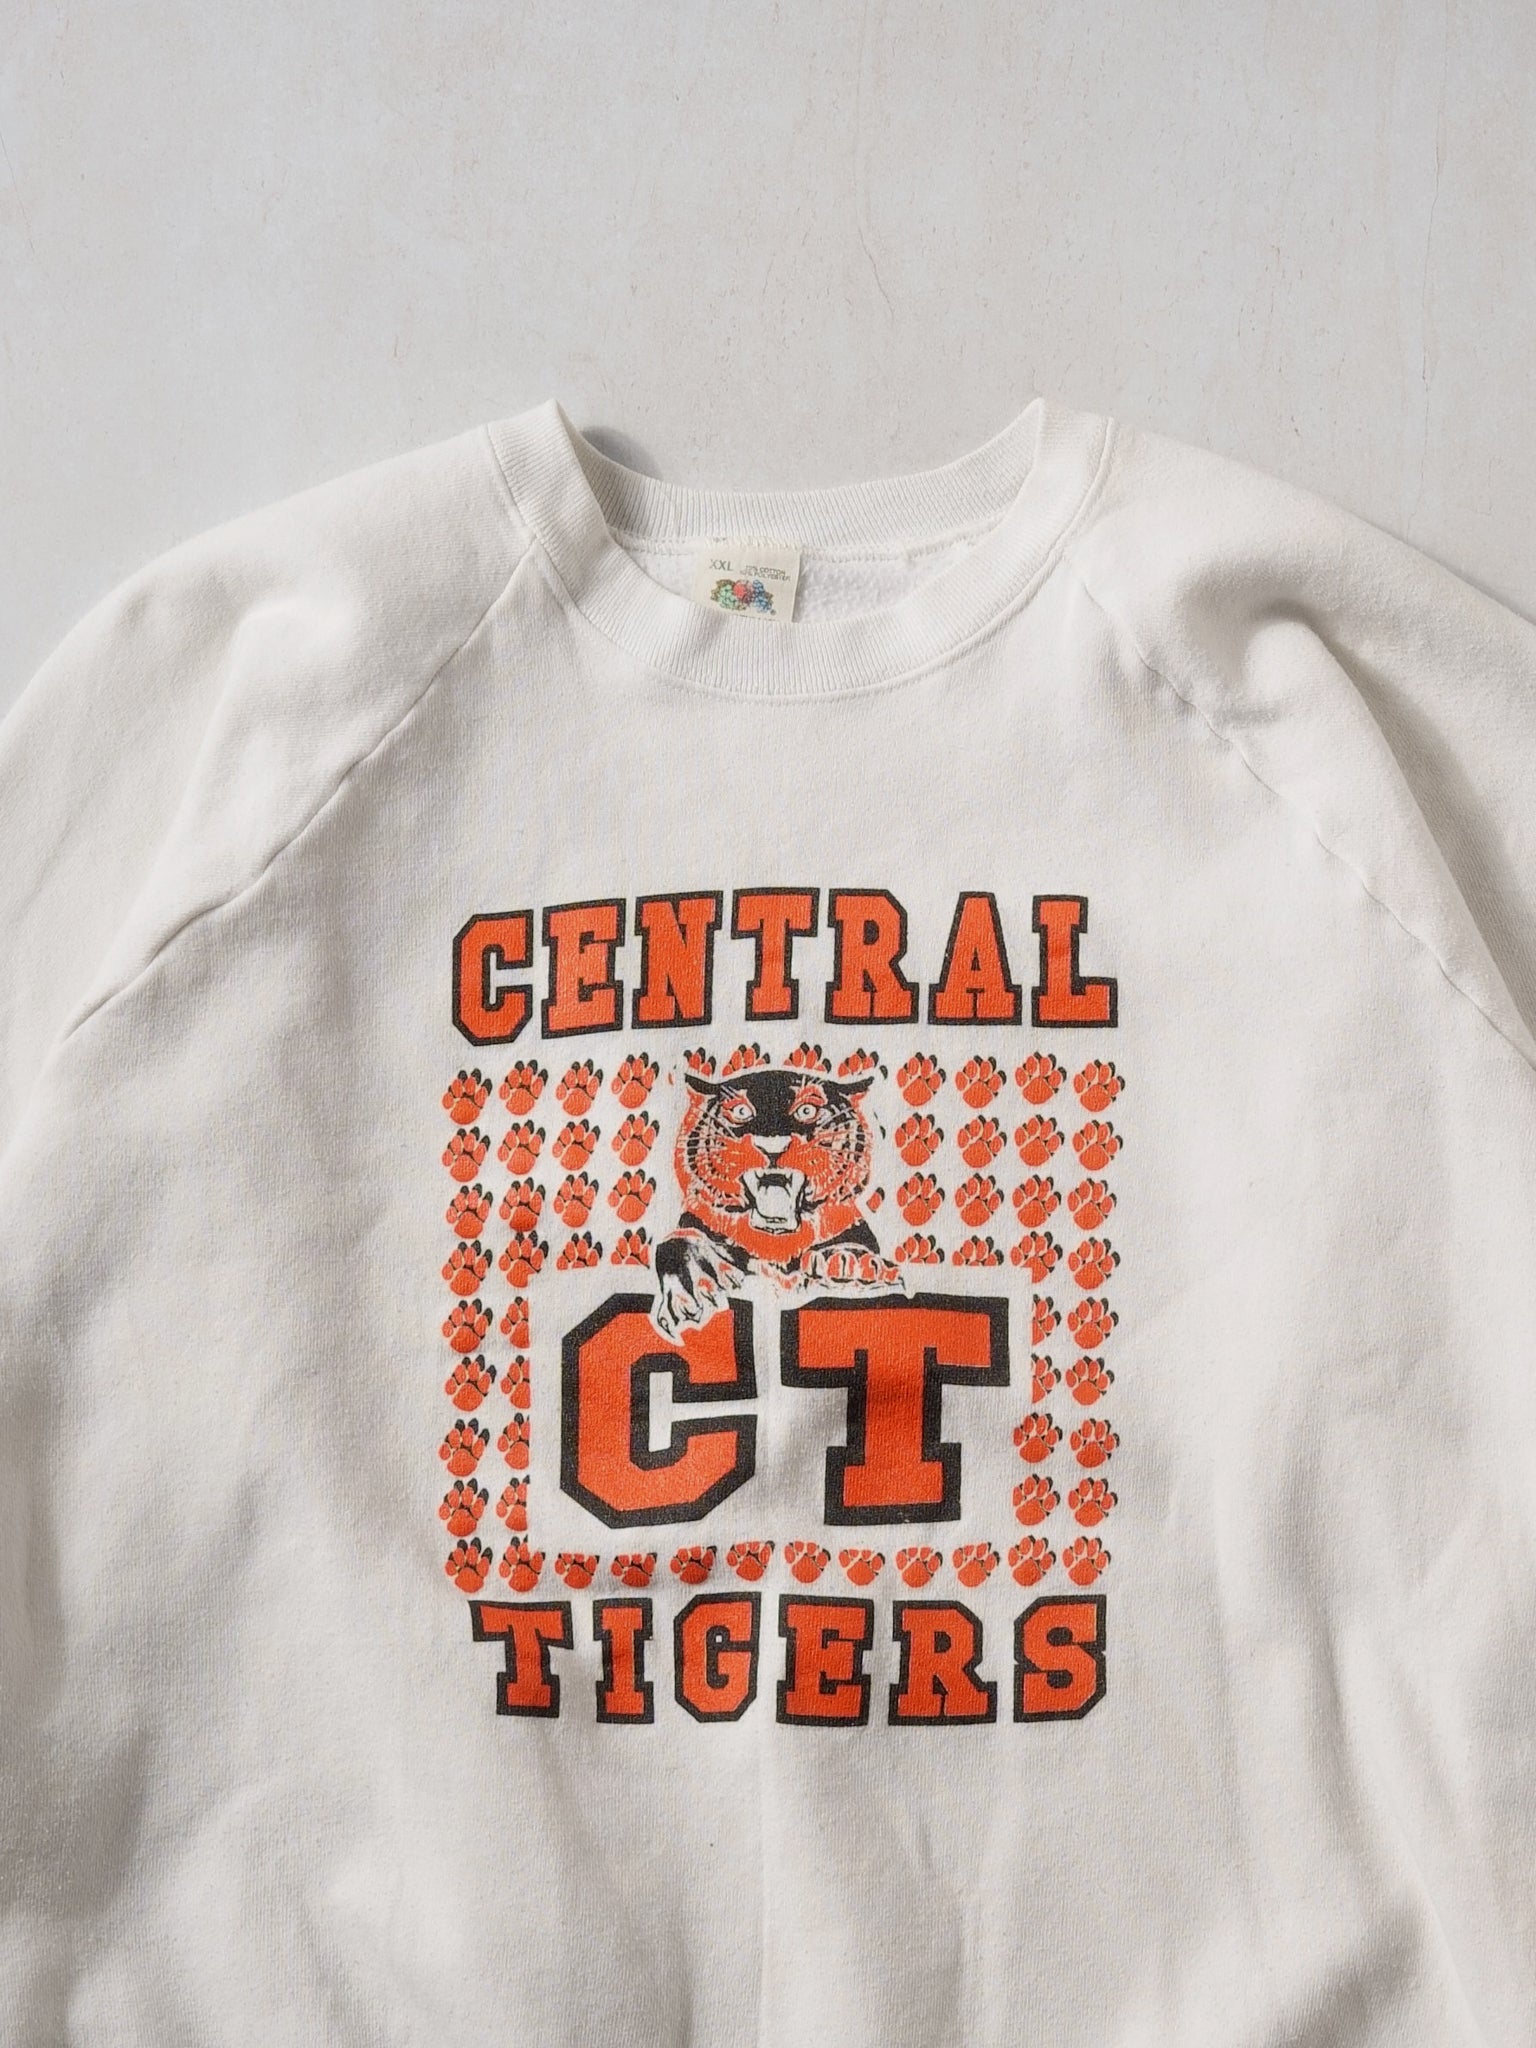 Vintage 90s White Central CT Tigers Crewneck (L)